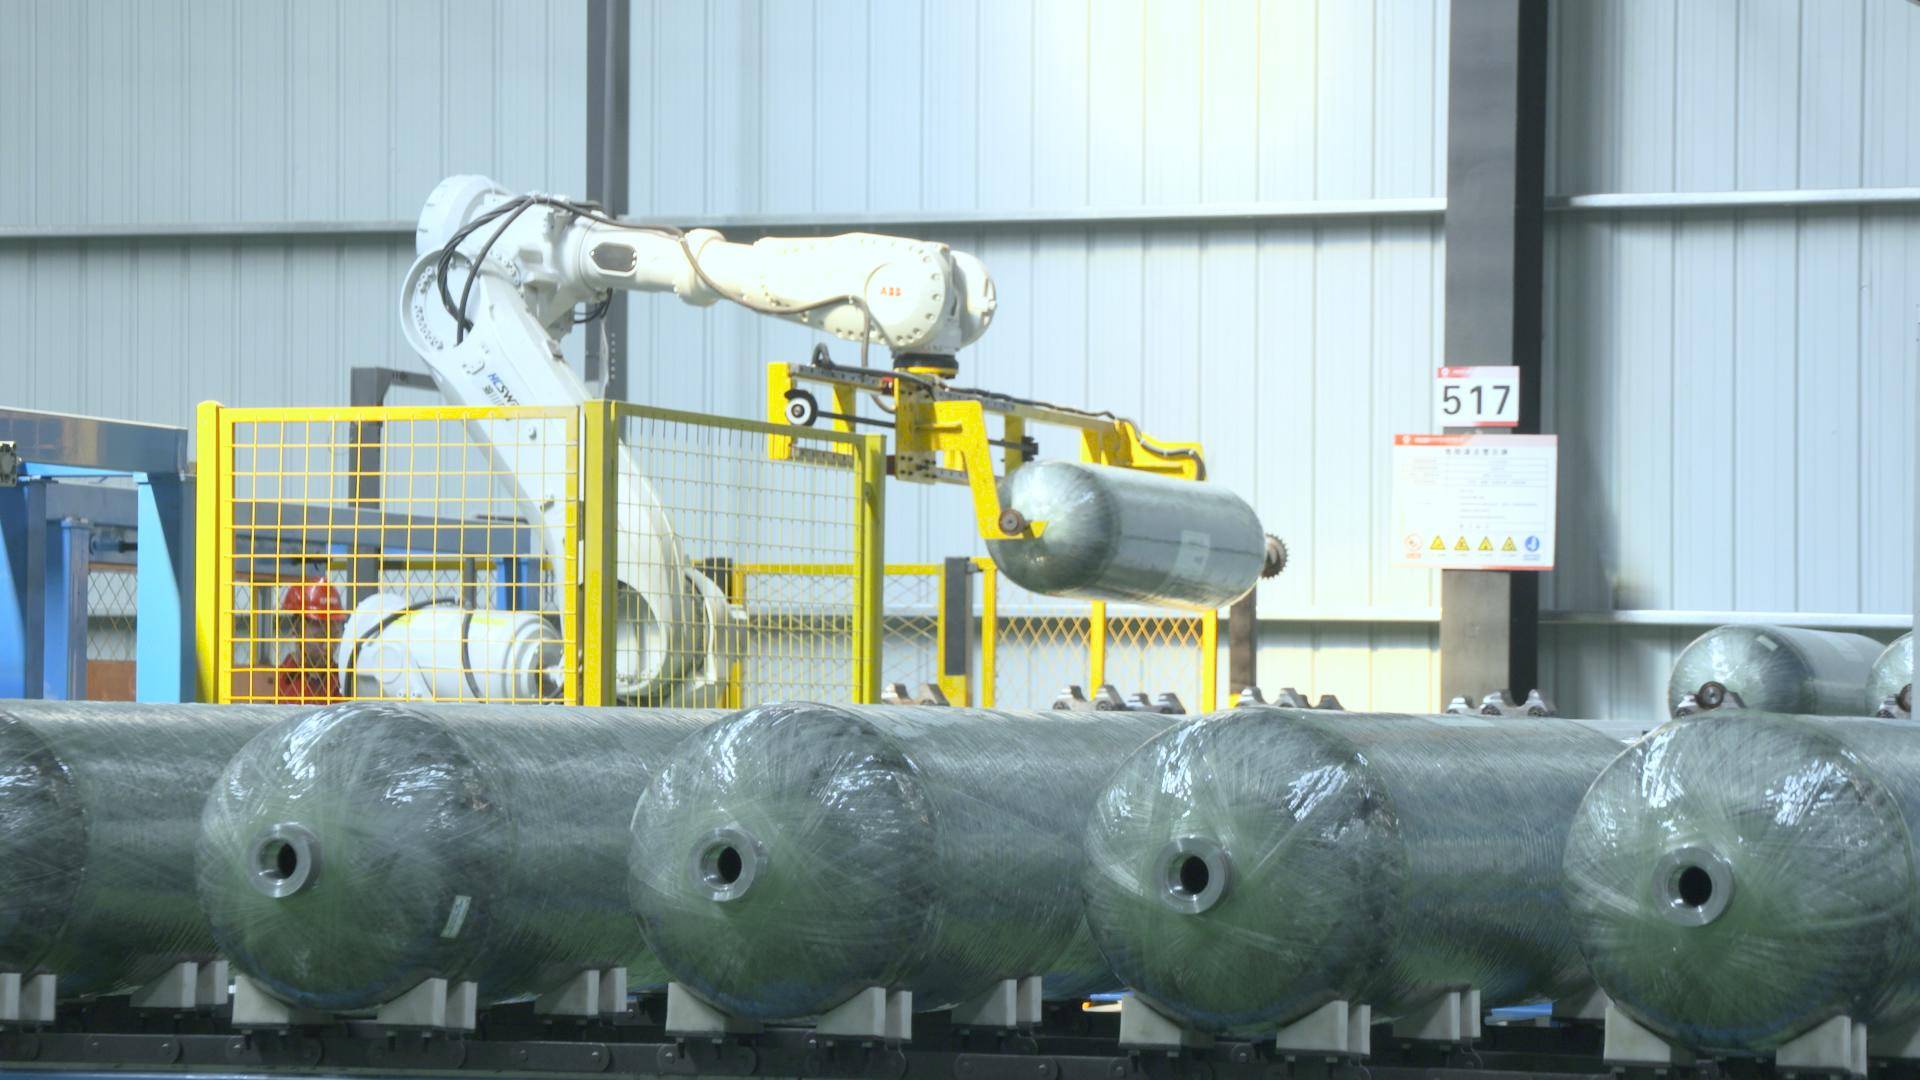 成都将诞生亚太区域最大储氢瓶单体制造工厂